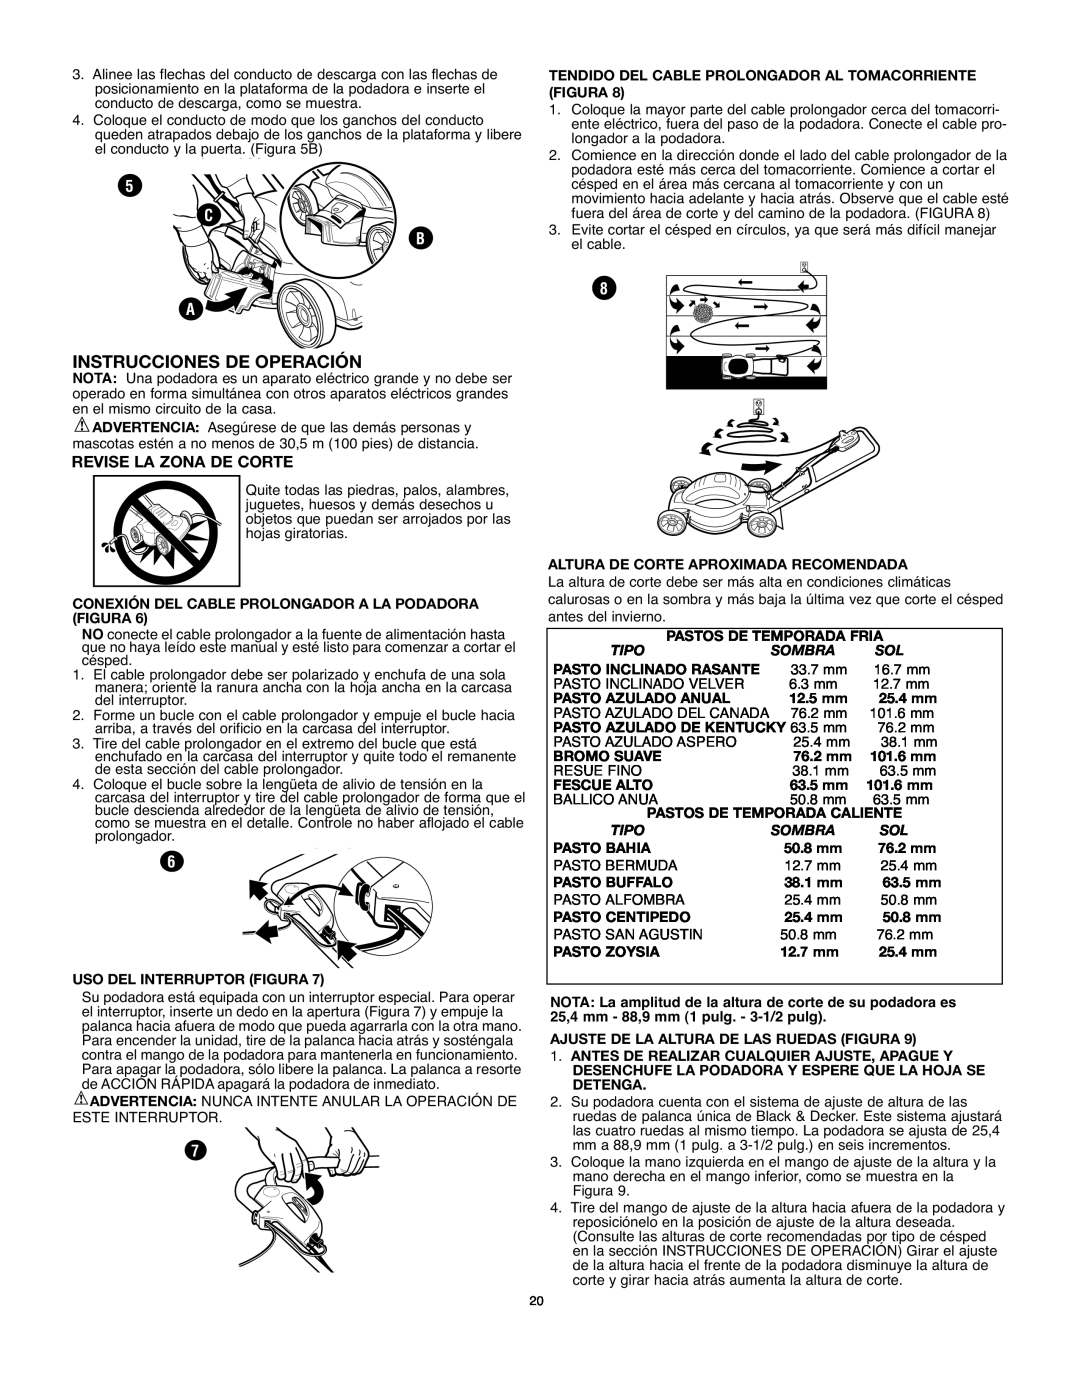 Black & Decker MM575 instruction manual Instrucciones De Operación, C B A, Revise La Zona De Corte 